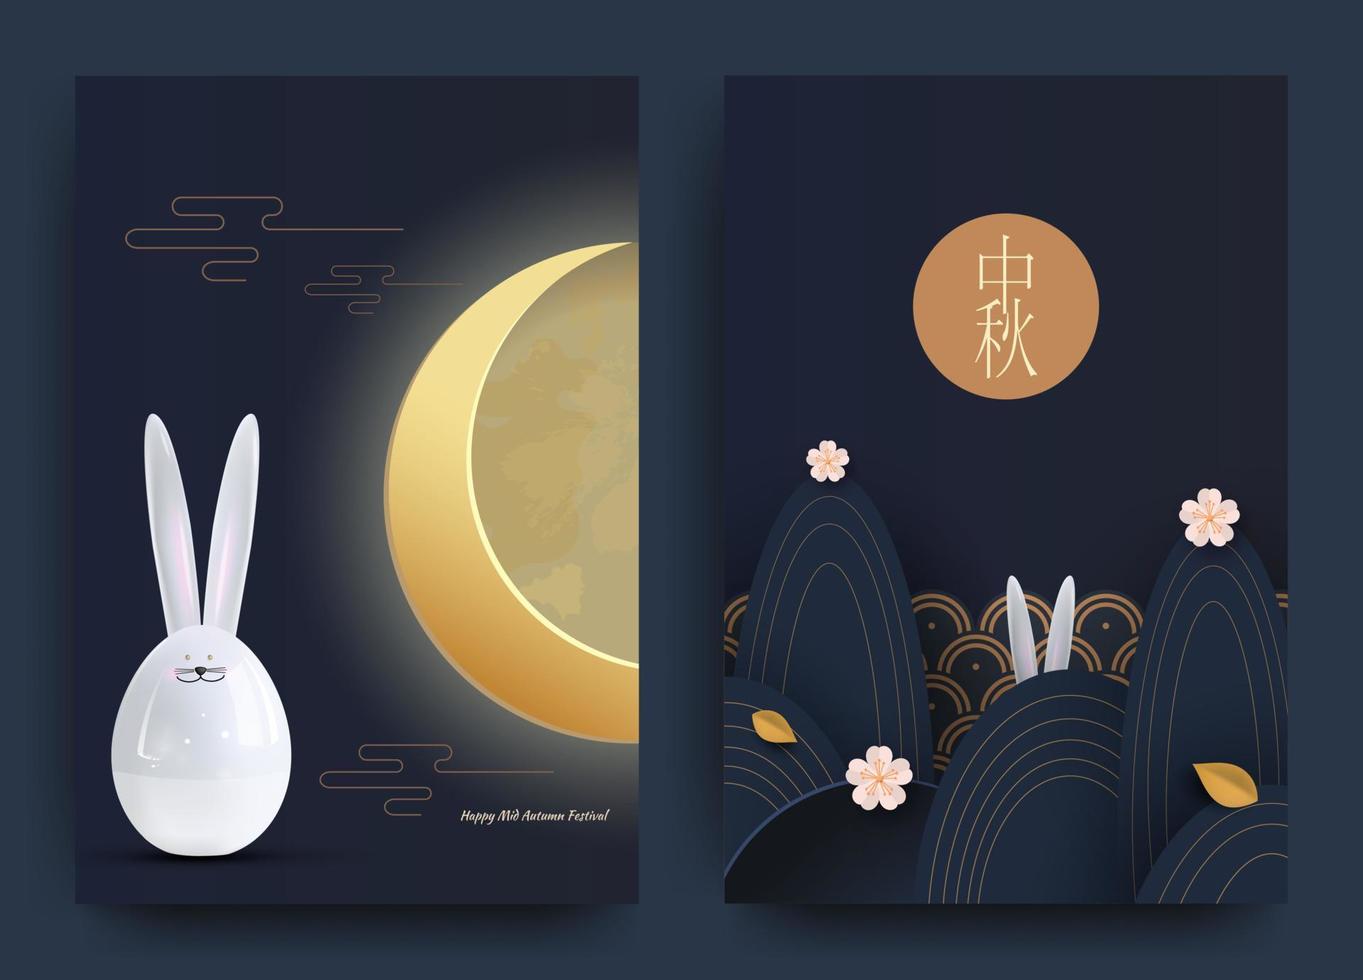 diseño de pancartas con patrones de círculos chinos tradicionales que representan la luna llena. liebre, hojas de otoño, oro sobre azul oscuro. vector